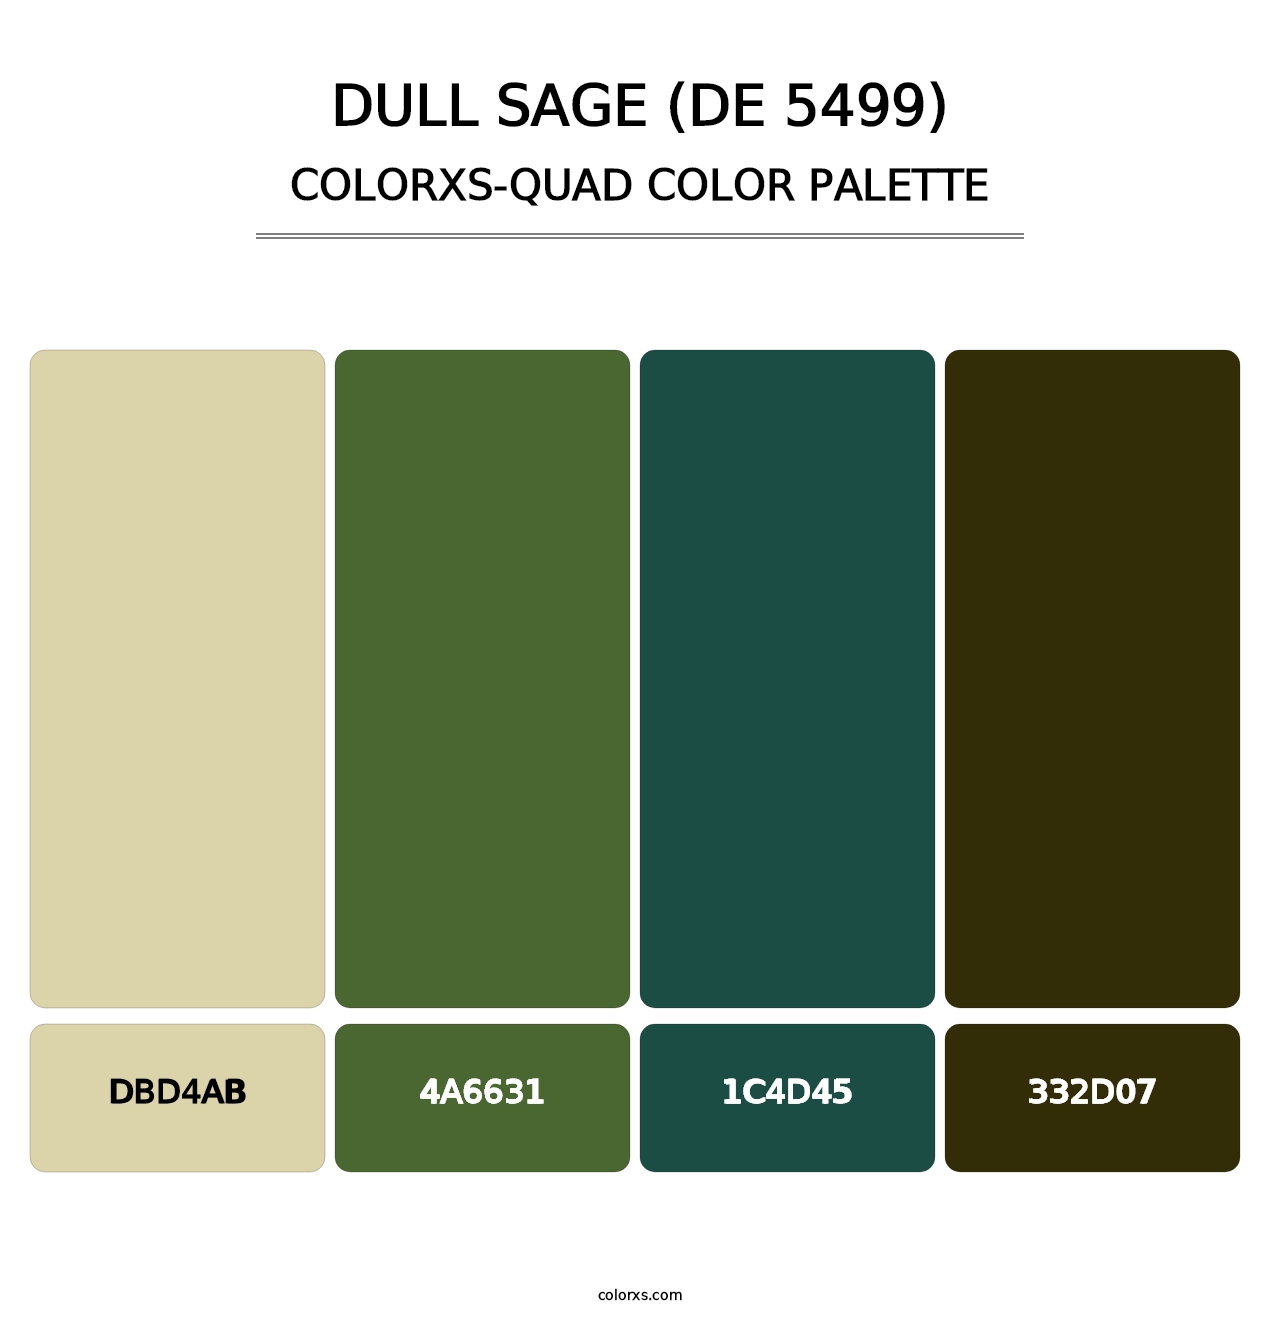 Dull Sage (DE 5499) - Colorxs Quad Palette